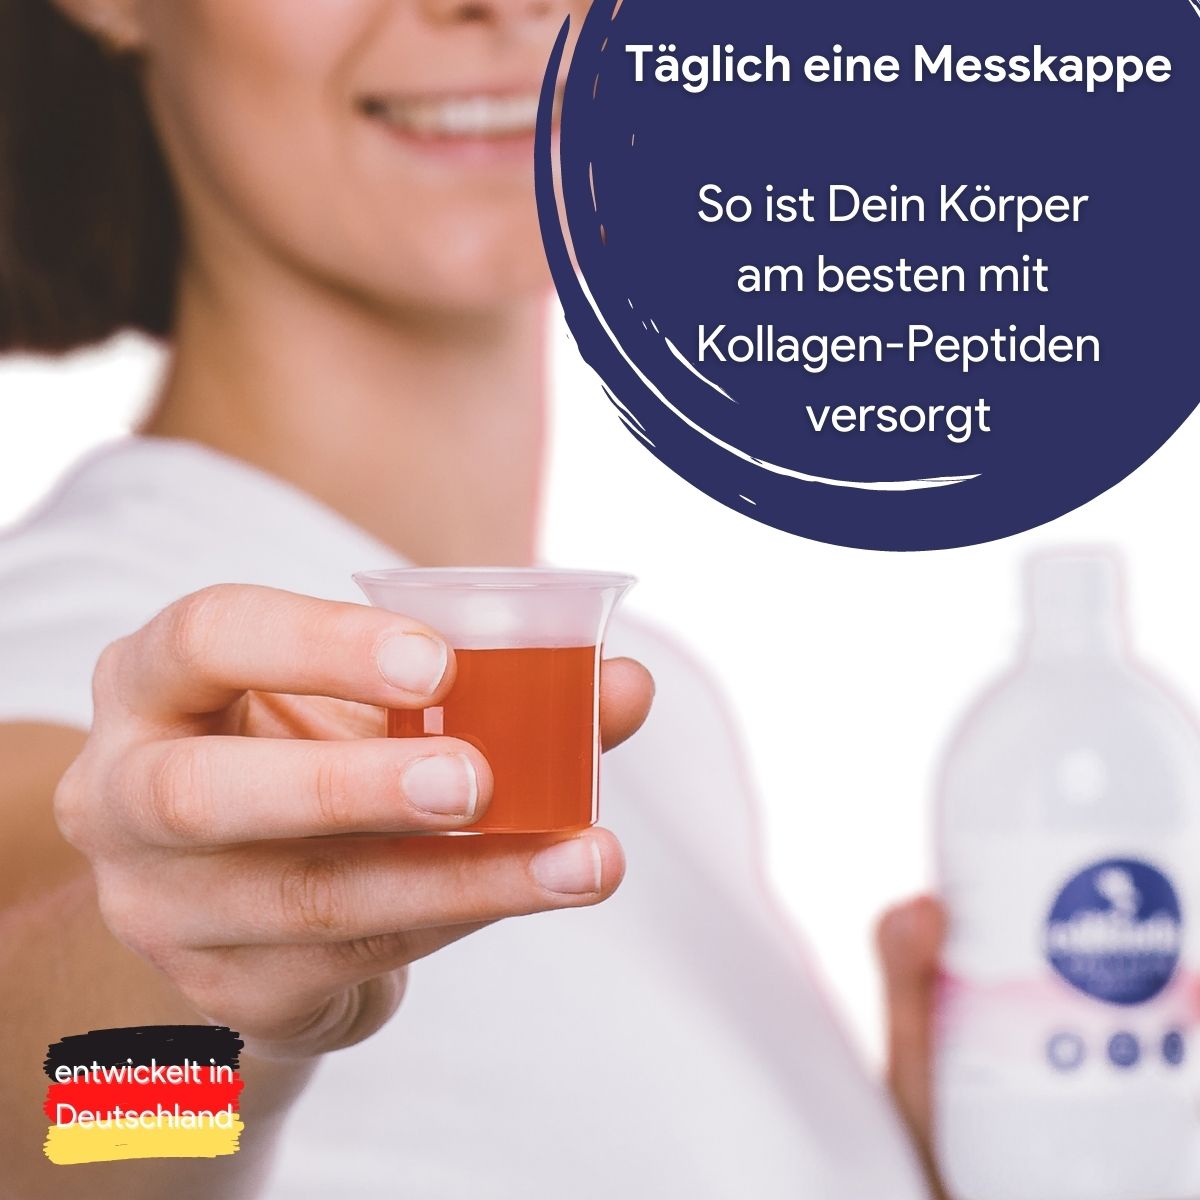 Frau hält Messkappe mit Trink-Kollagen in ihrer Hand, daneben Text: Täglich eine Messkappe so ist dein Körper am besten mit Kollagen-Peptiden versorgt, entwickelt in Deutschland